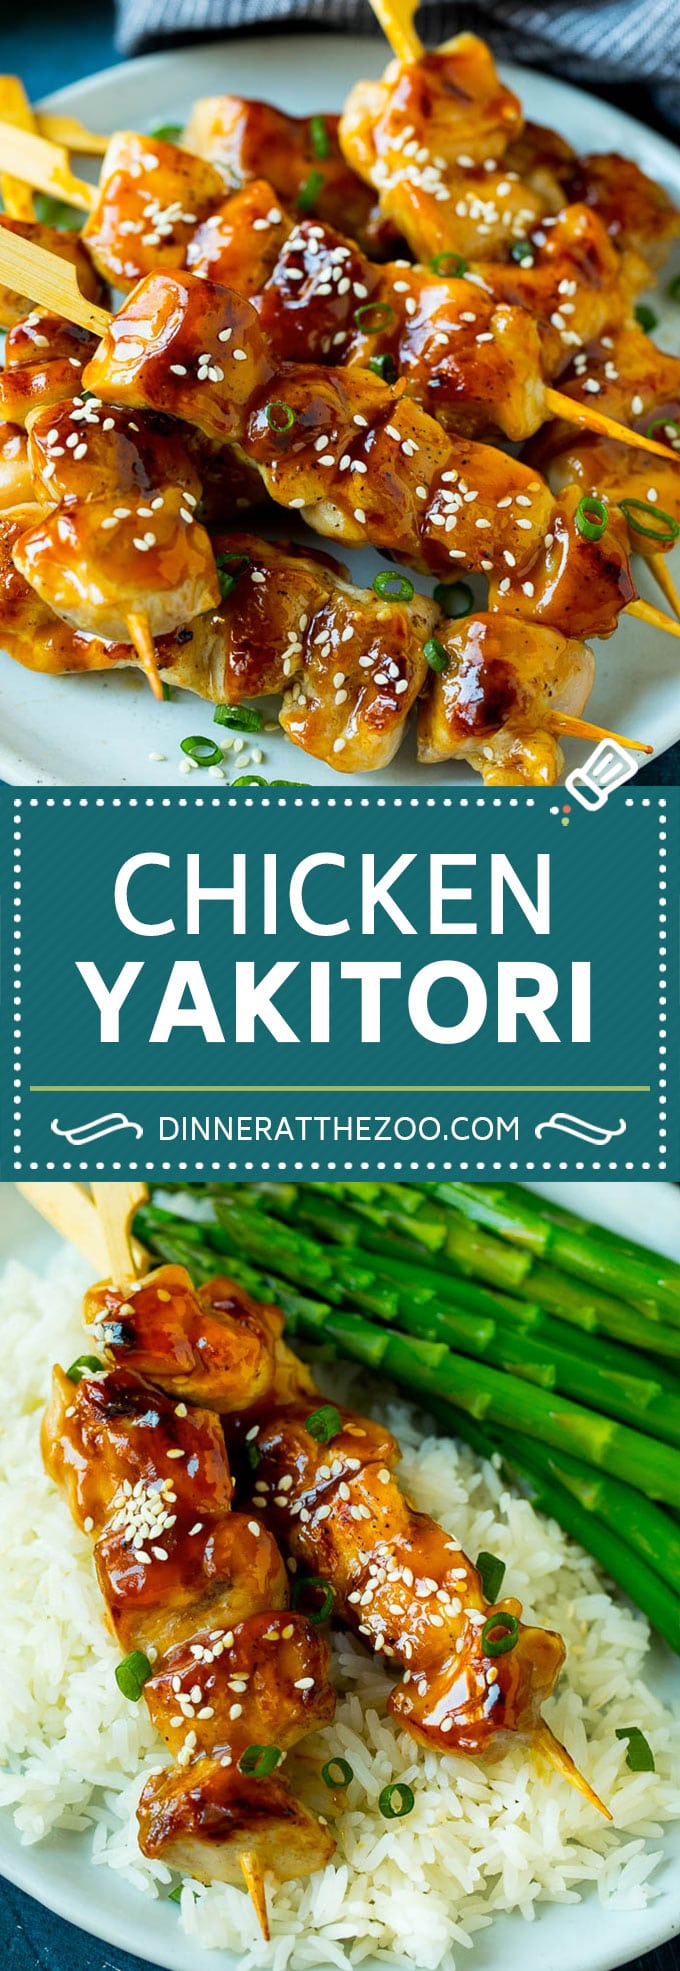 Chicken Yakitori Recipe | Grilled Chicken #chicken #grilling #dinner #dinneratthezoo